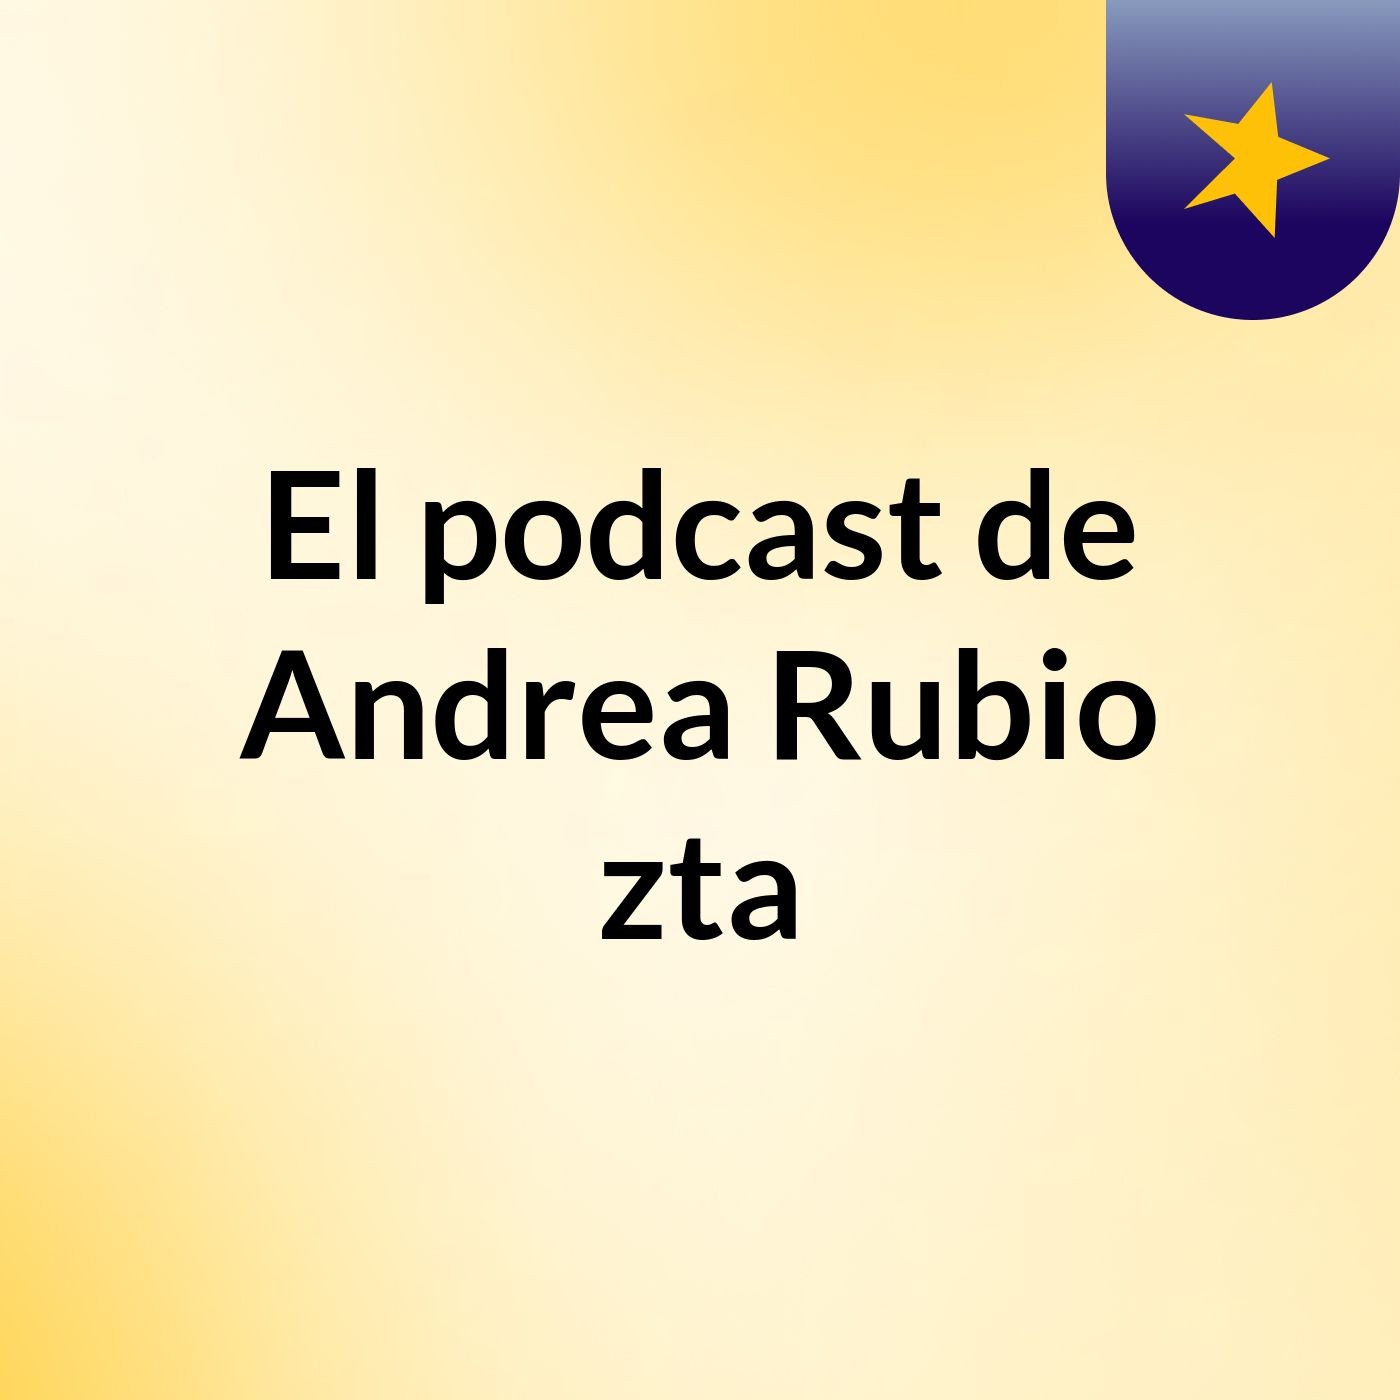 El podcast de Andrea Rubio zta